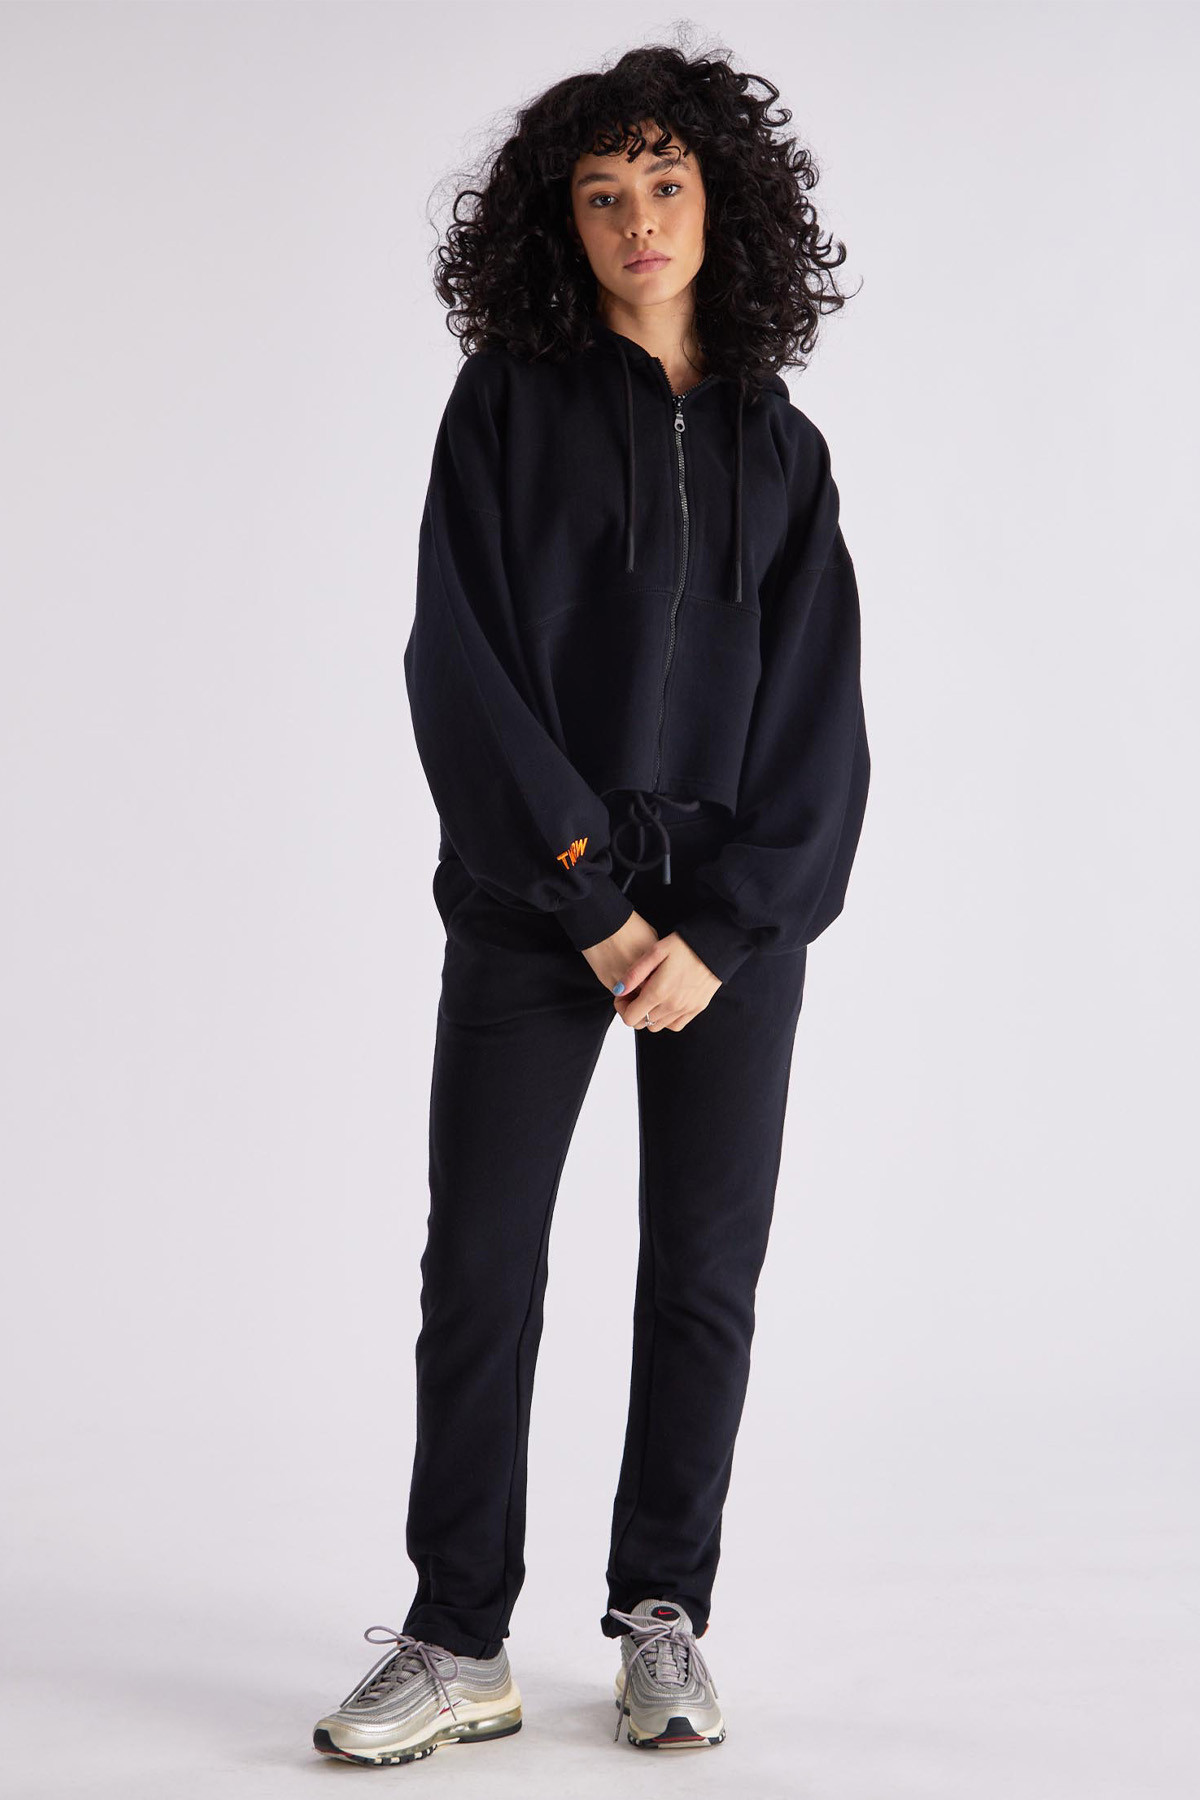 Black women's AMANDA GertrudeGaston zip-up hoodie, long sleeves